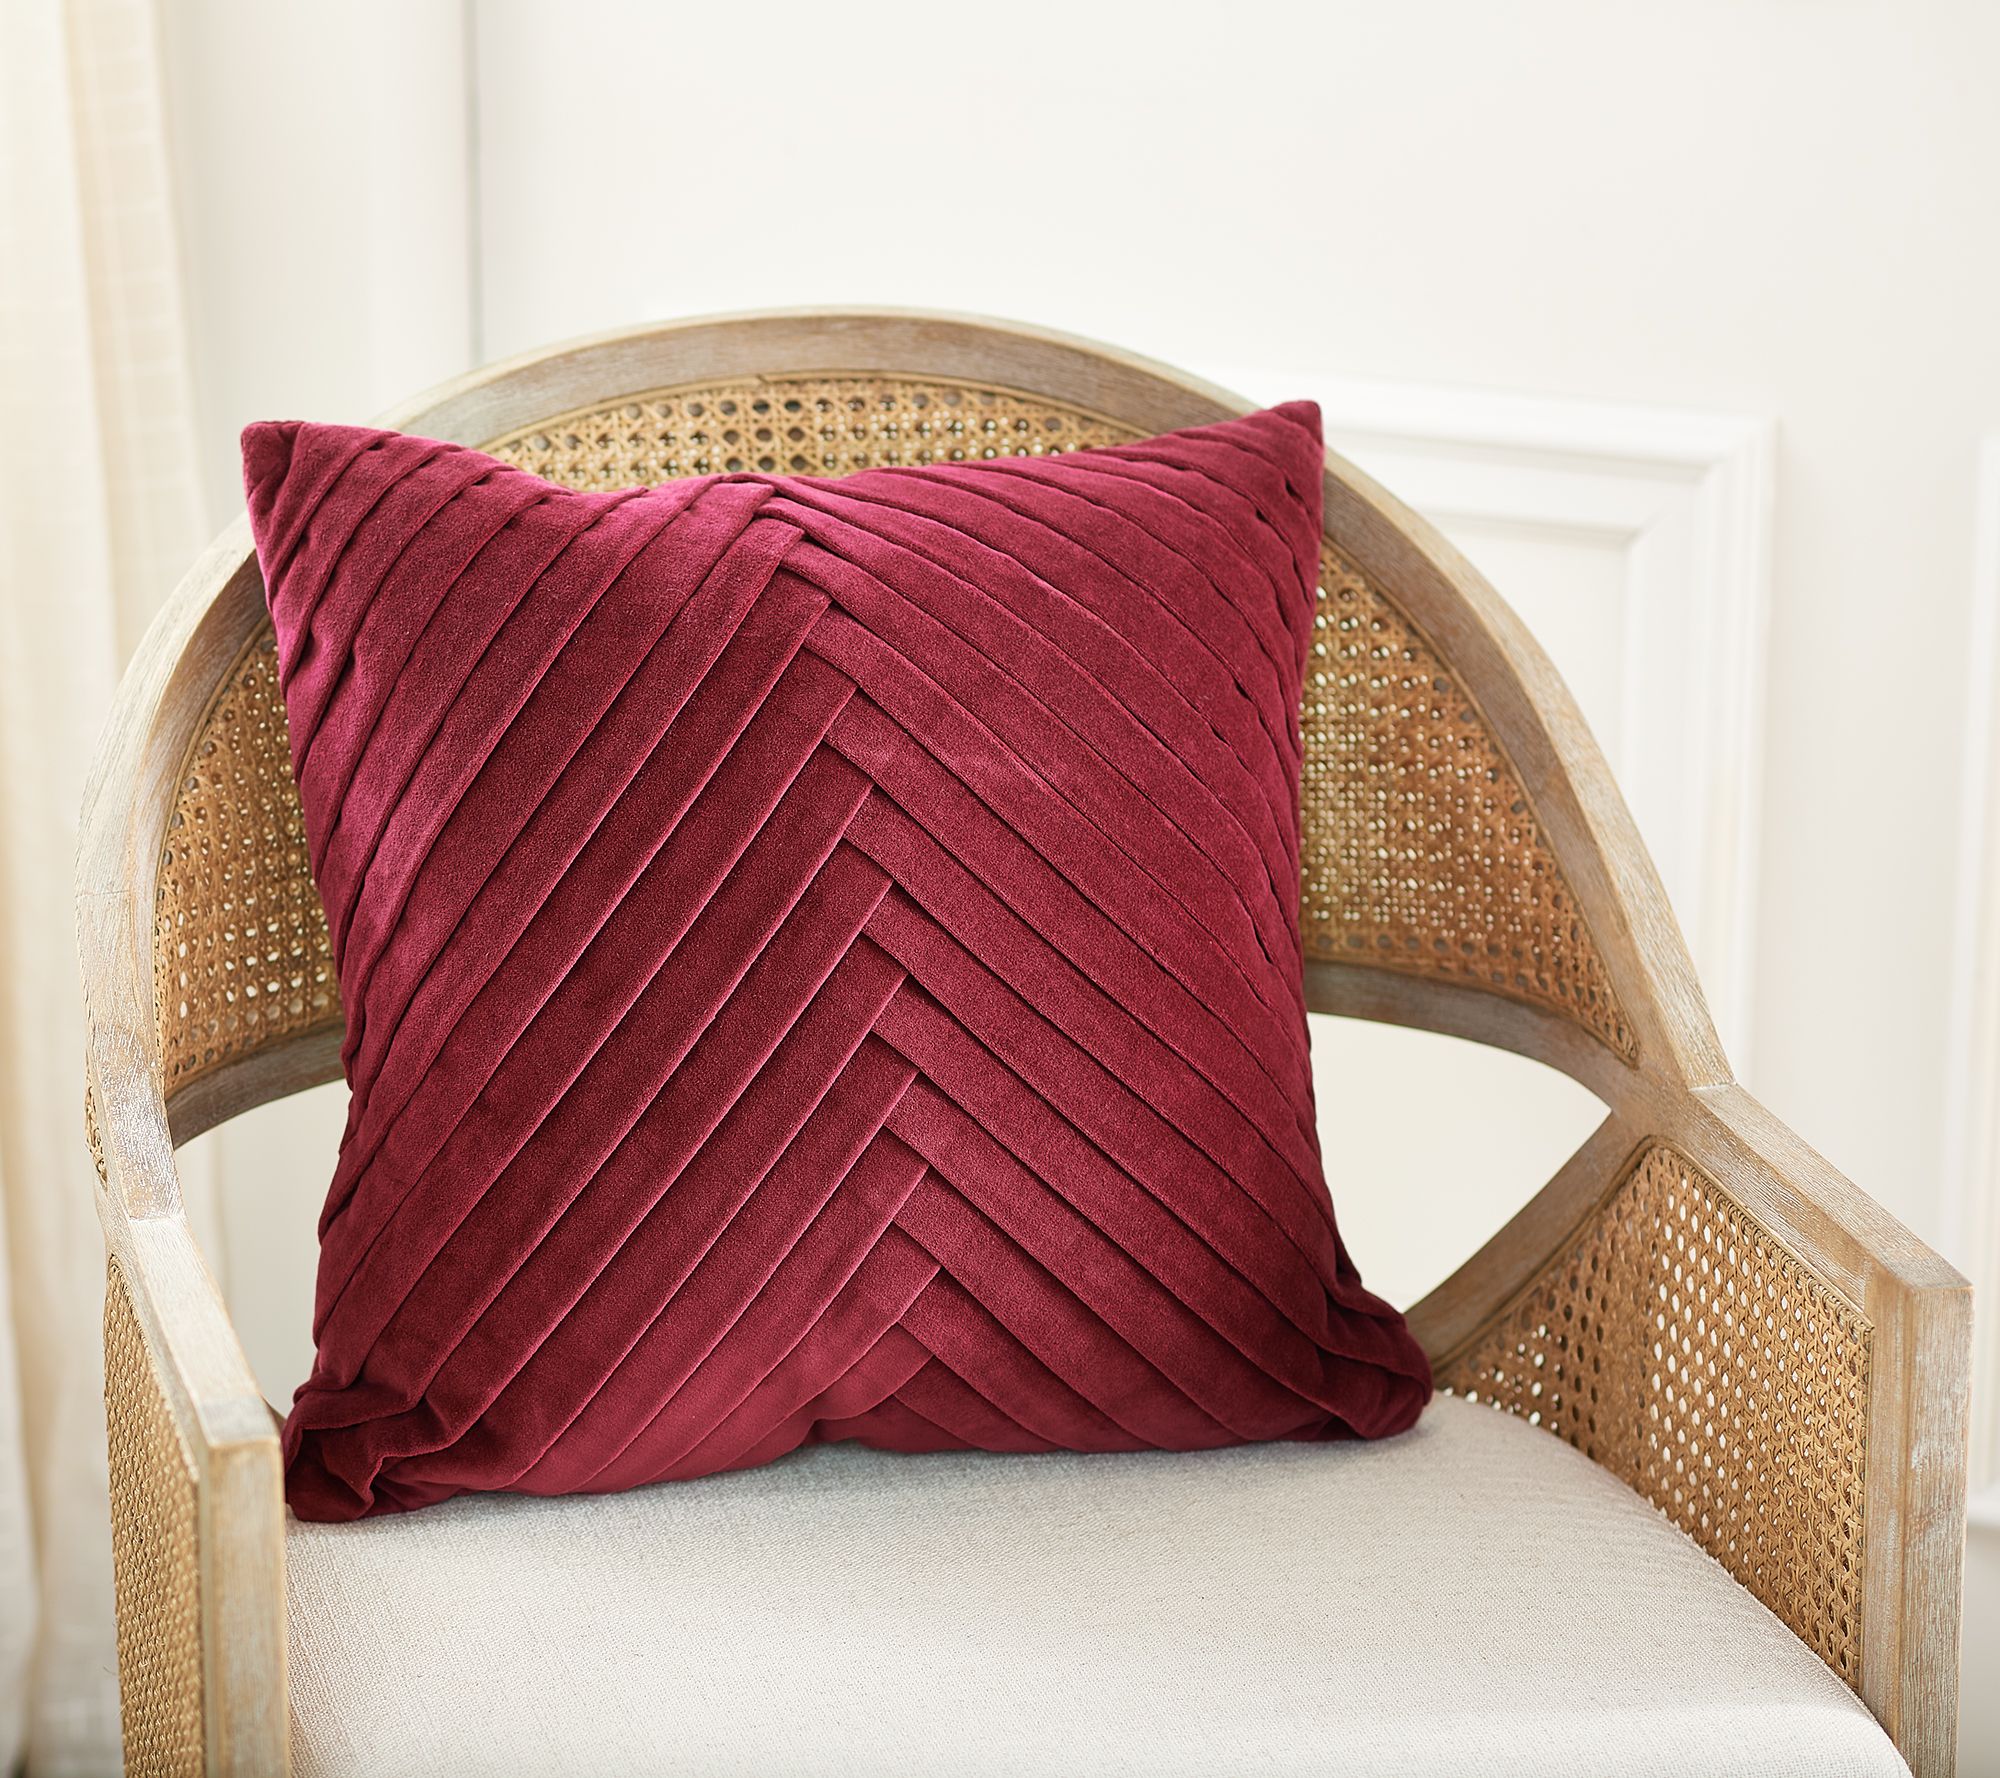 Luxe Rachel Zoe  Home Décor, Decorative Pillows & More 